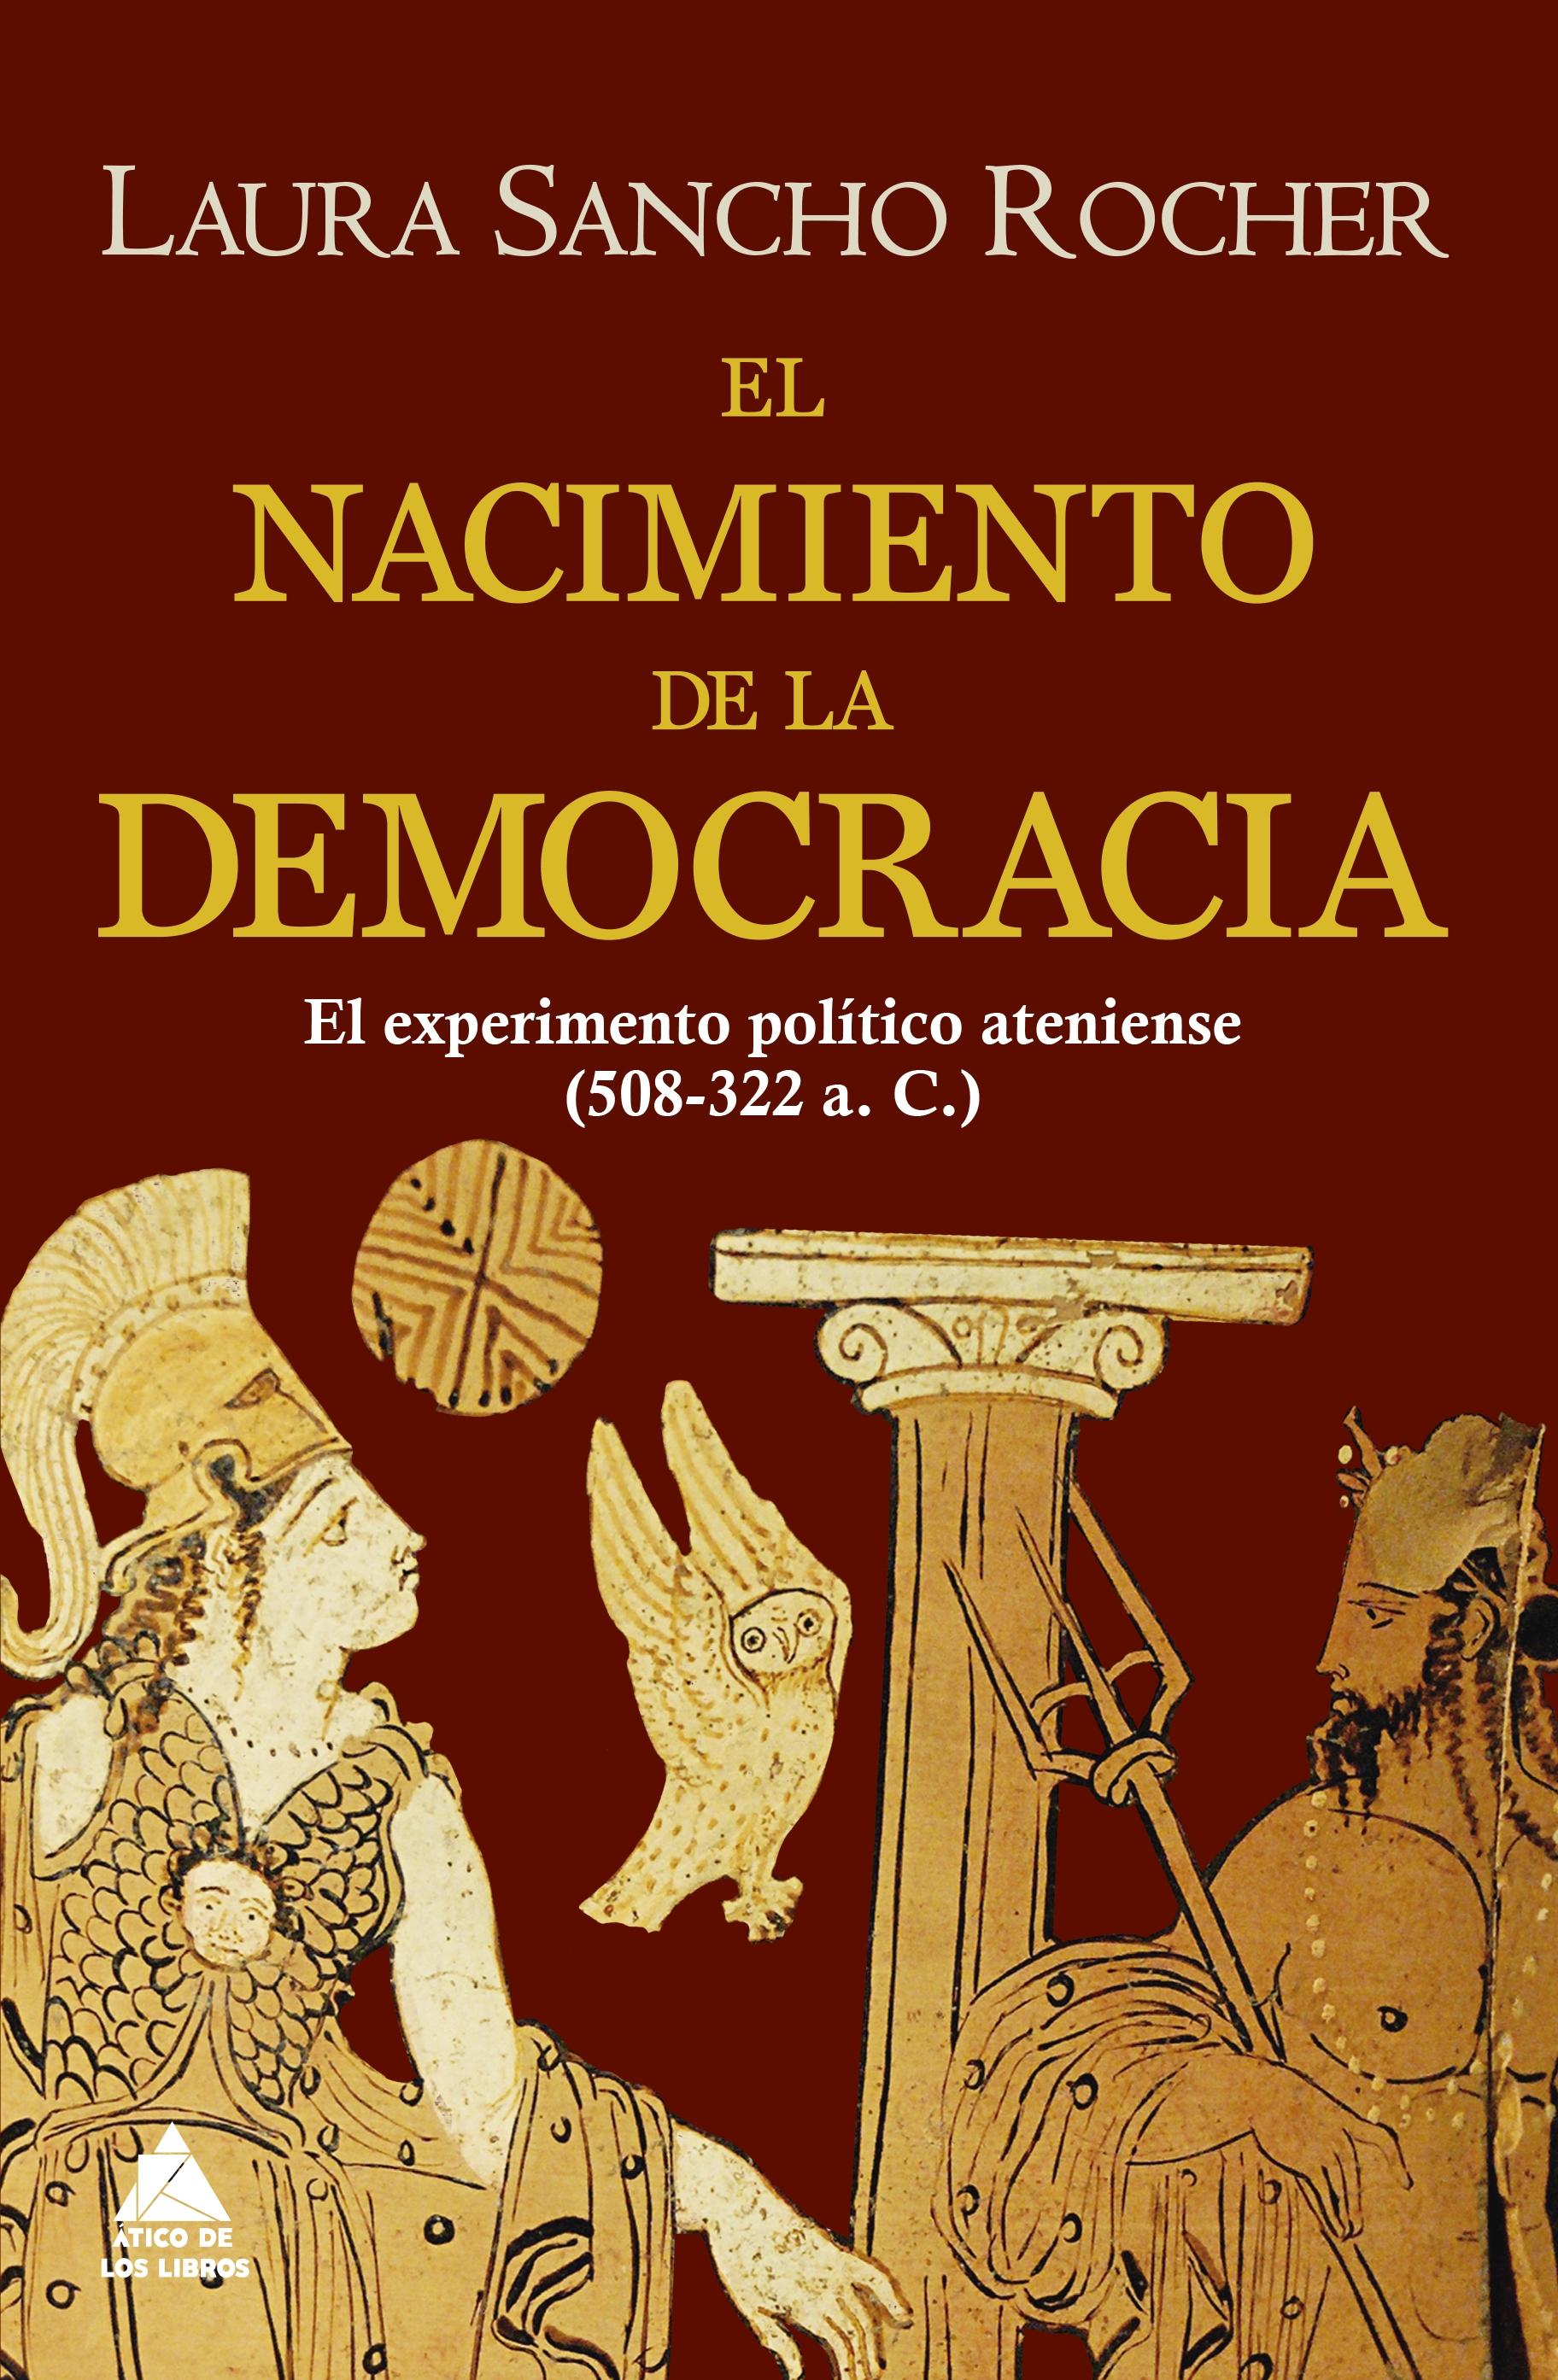 Nacimiento de la democracia, El "El experimento político ateniense (508-322 a.C.)"